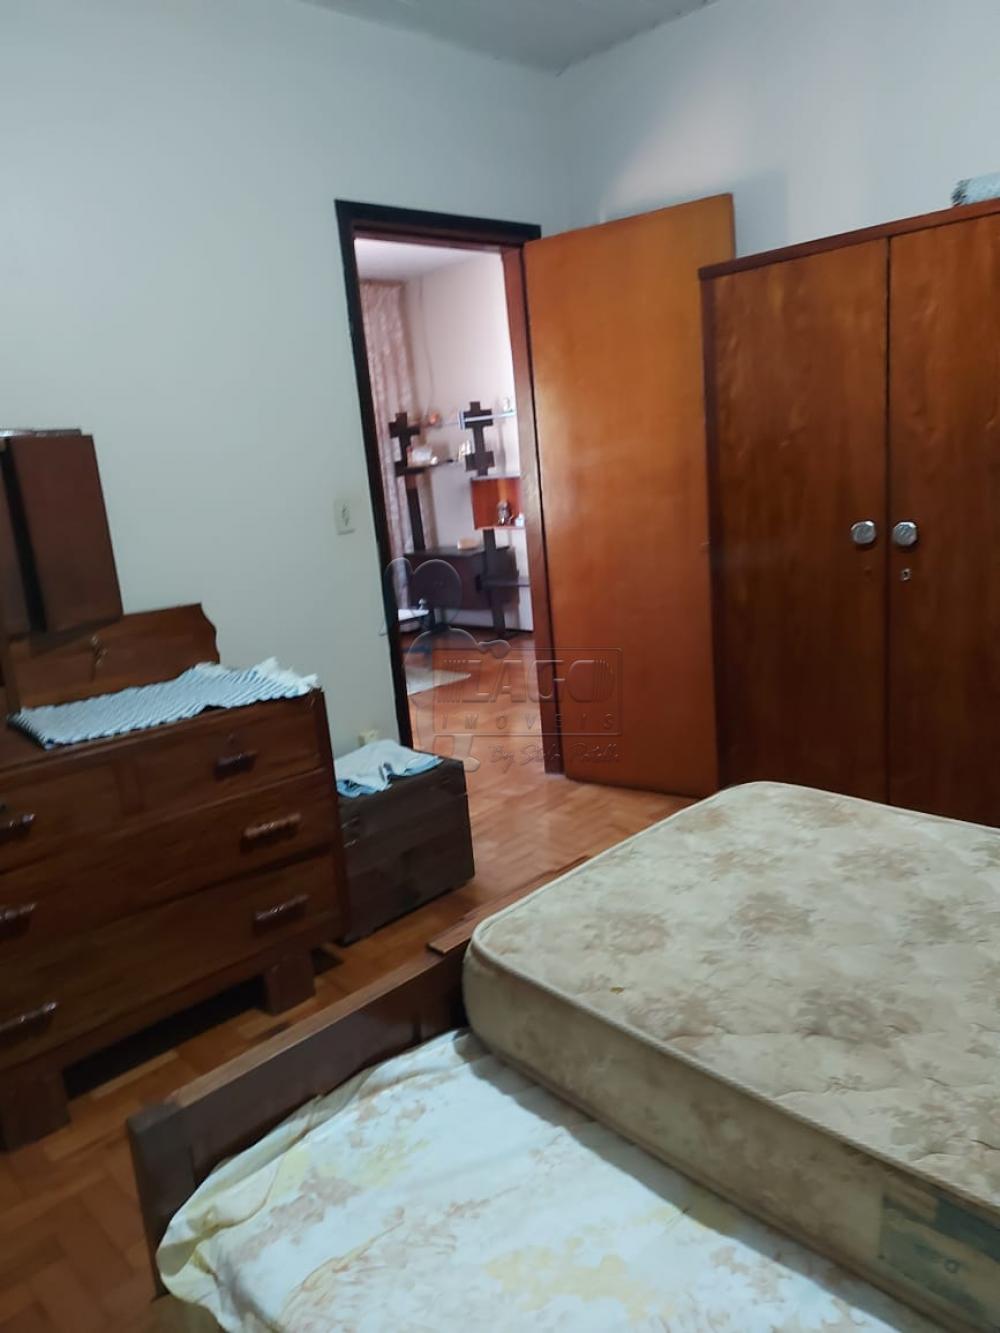 Comprar Casas / Padrão em Sertãozinho R$ 270.000,00 - Foto 5